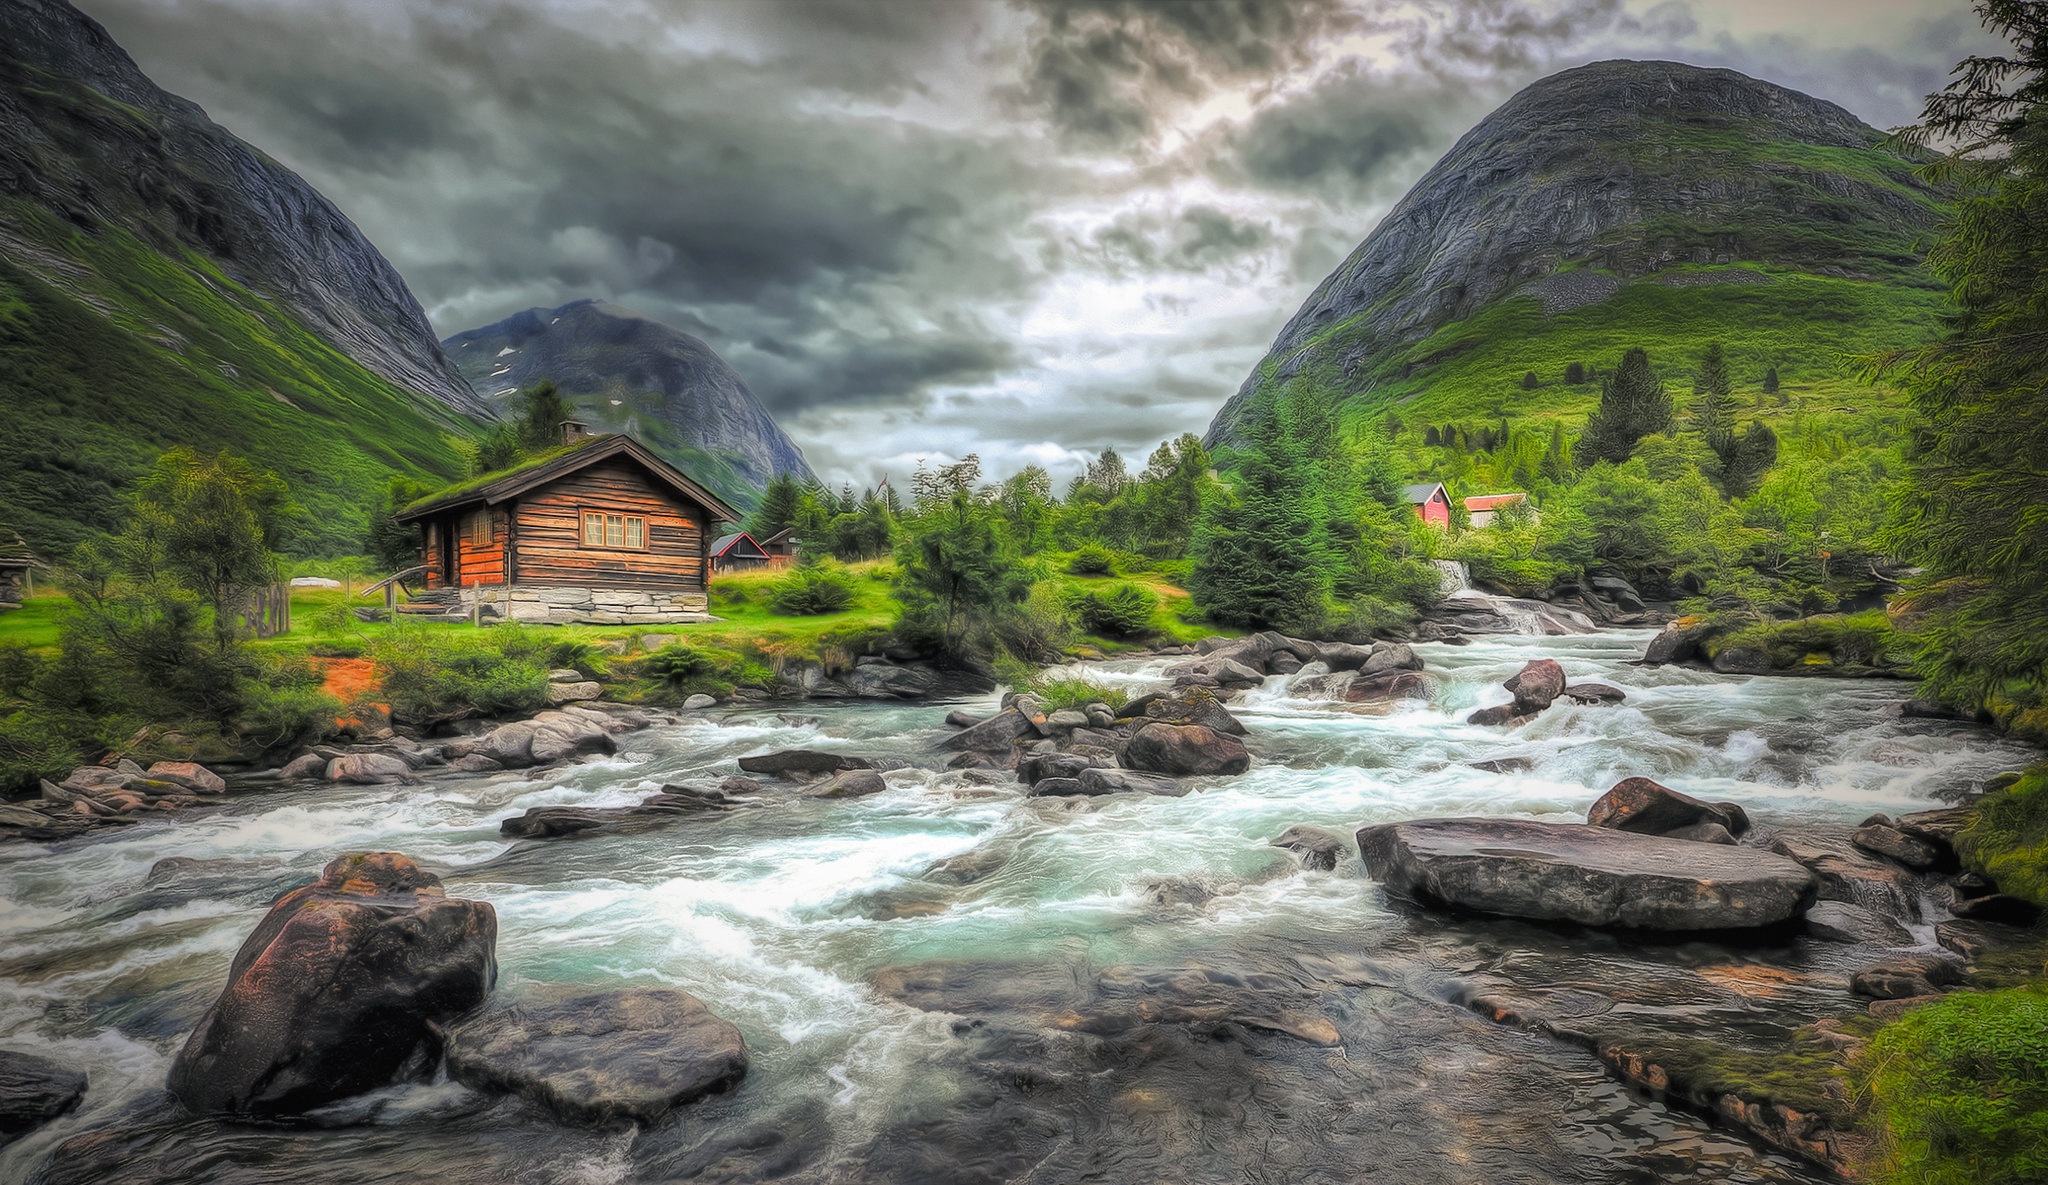 Скачать картинку Пейзаж, Река, Гора, Домик, Камень, Норвегия, Фотографии в телефон бесплатно.